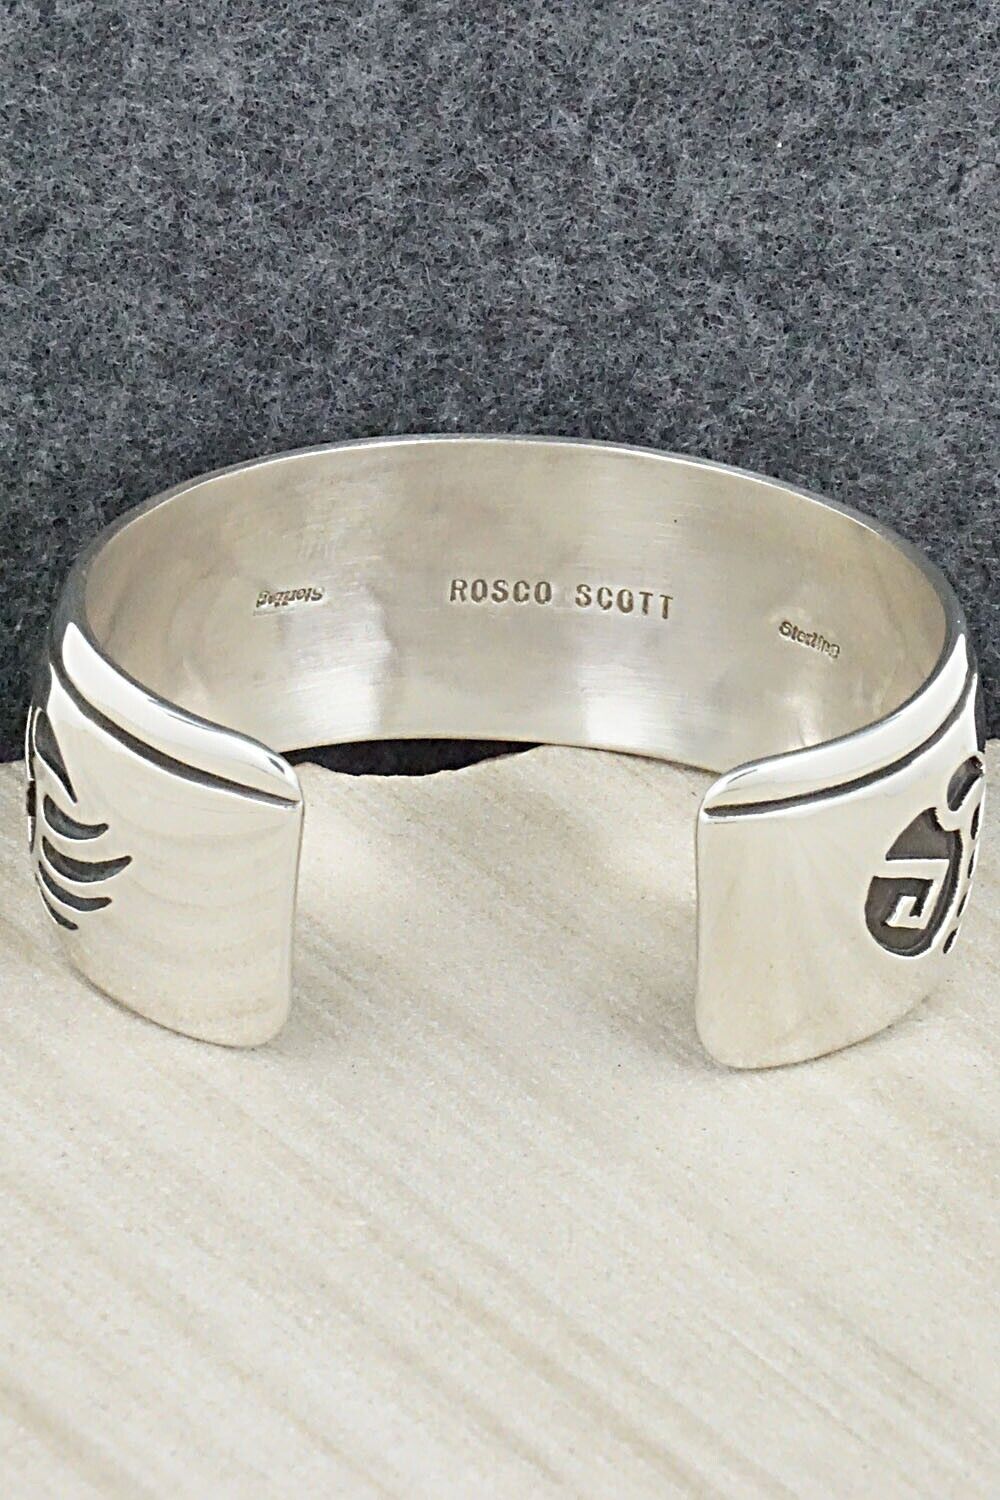 Sterling Silver Bracelet - Rosco Scott